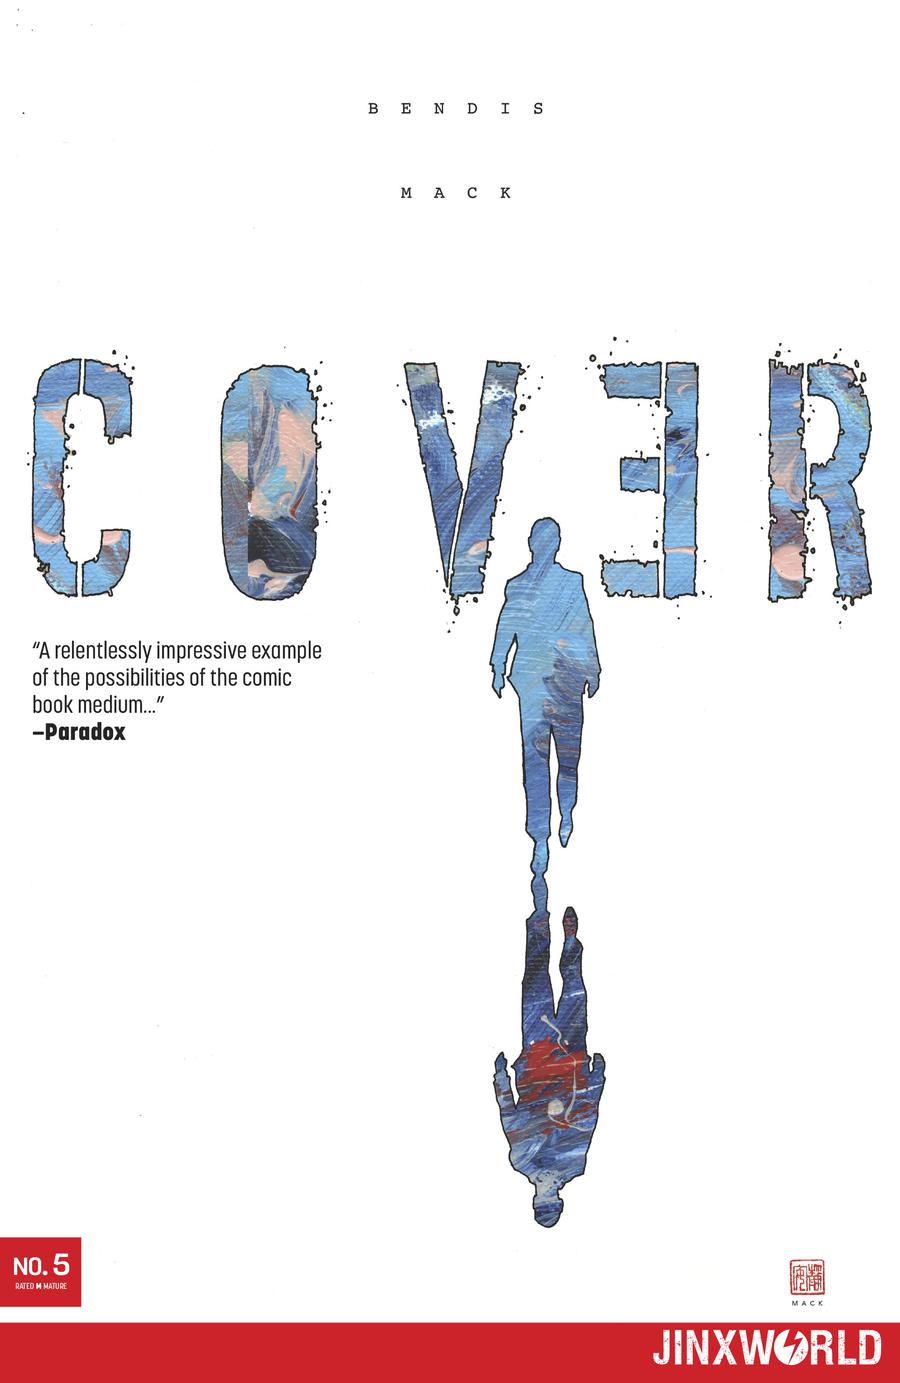 Cover #5 Cover A Regular David Mack Cover